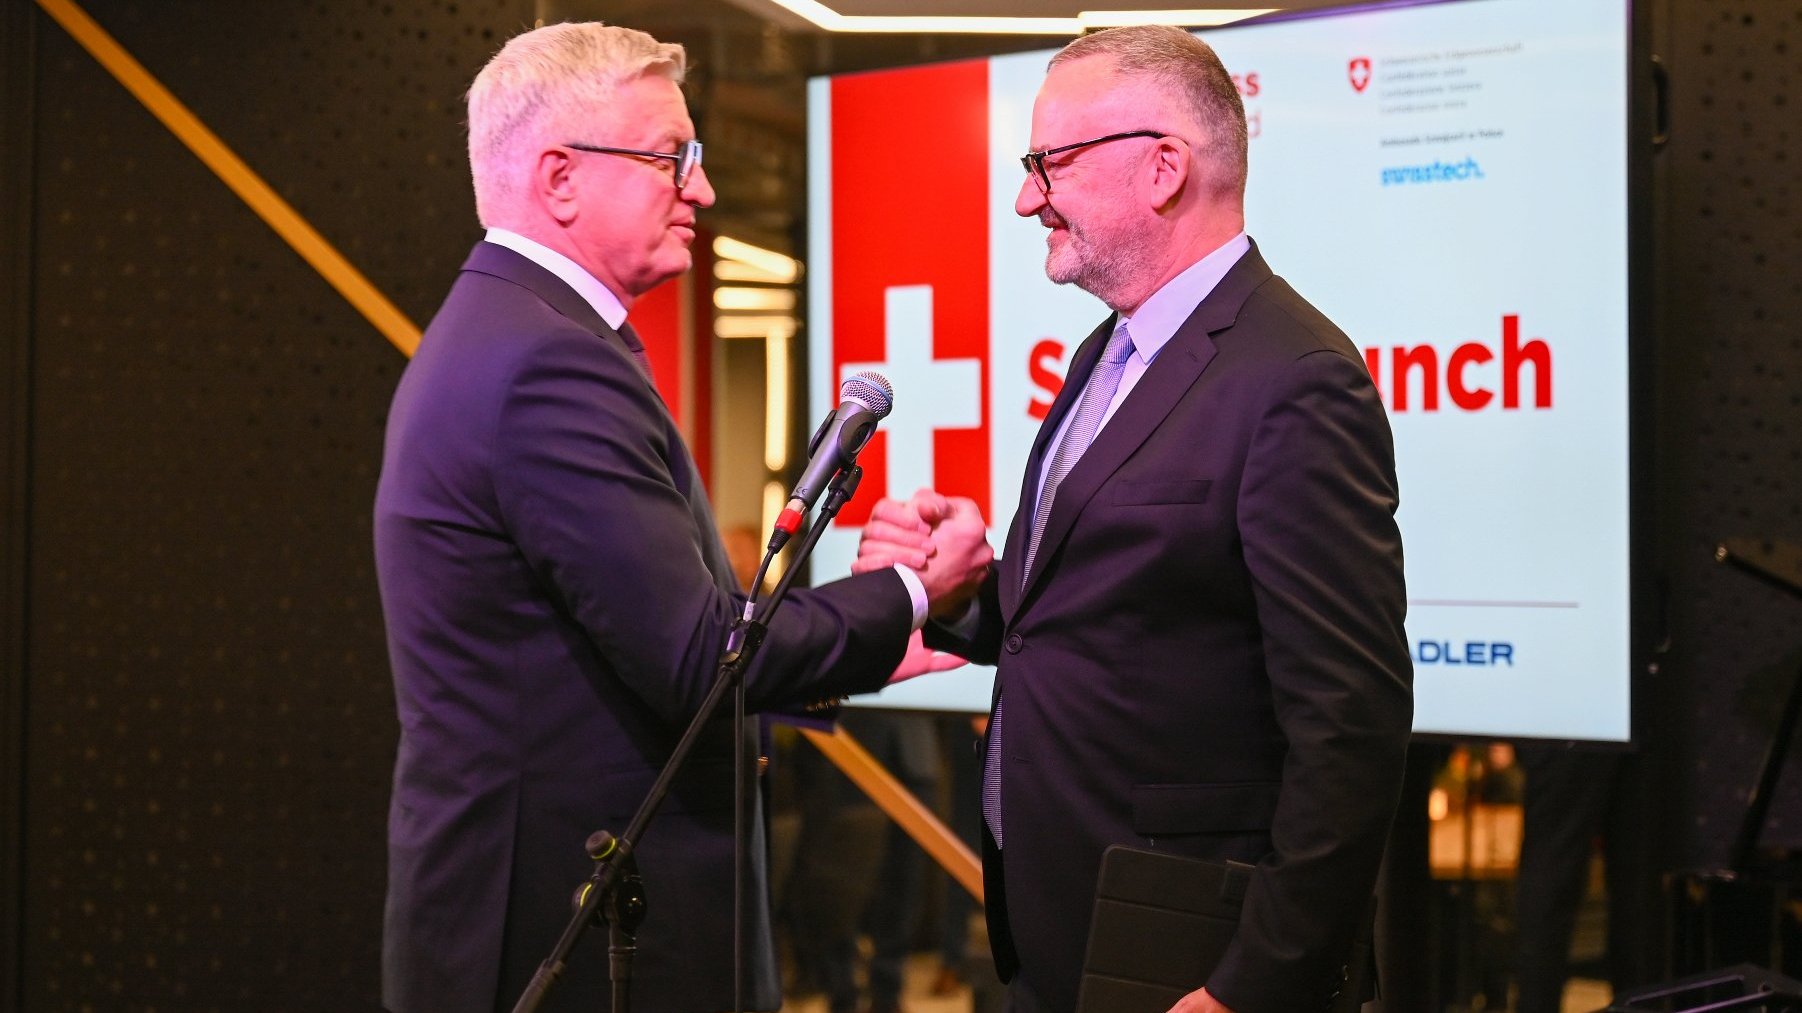 Na zdjęciu prezydent Poznania i ambasador Szwajcari podają sobie dłonie